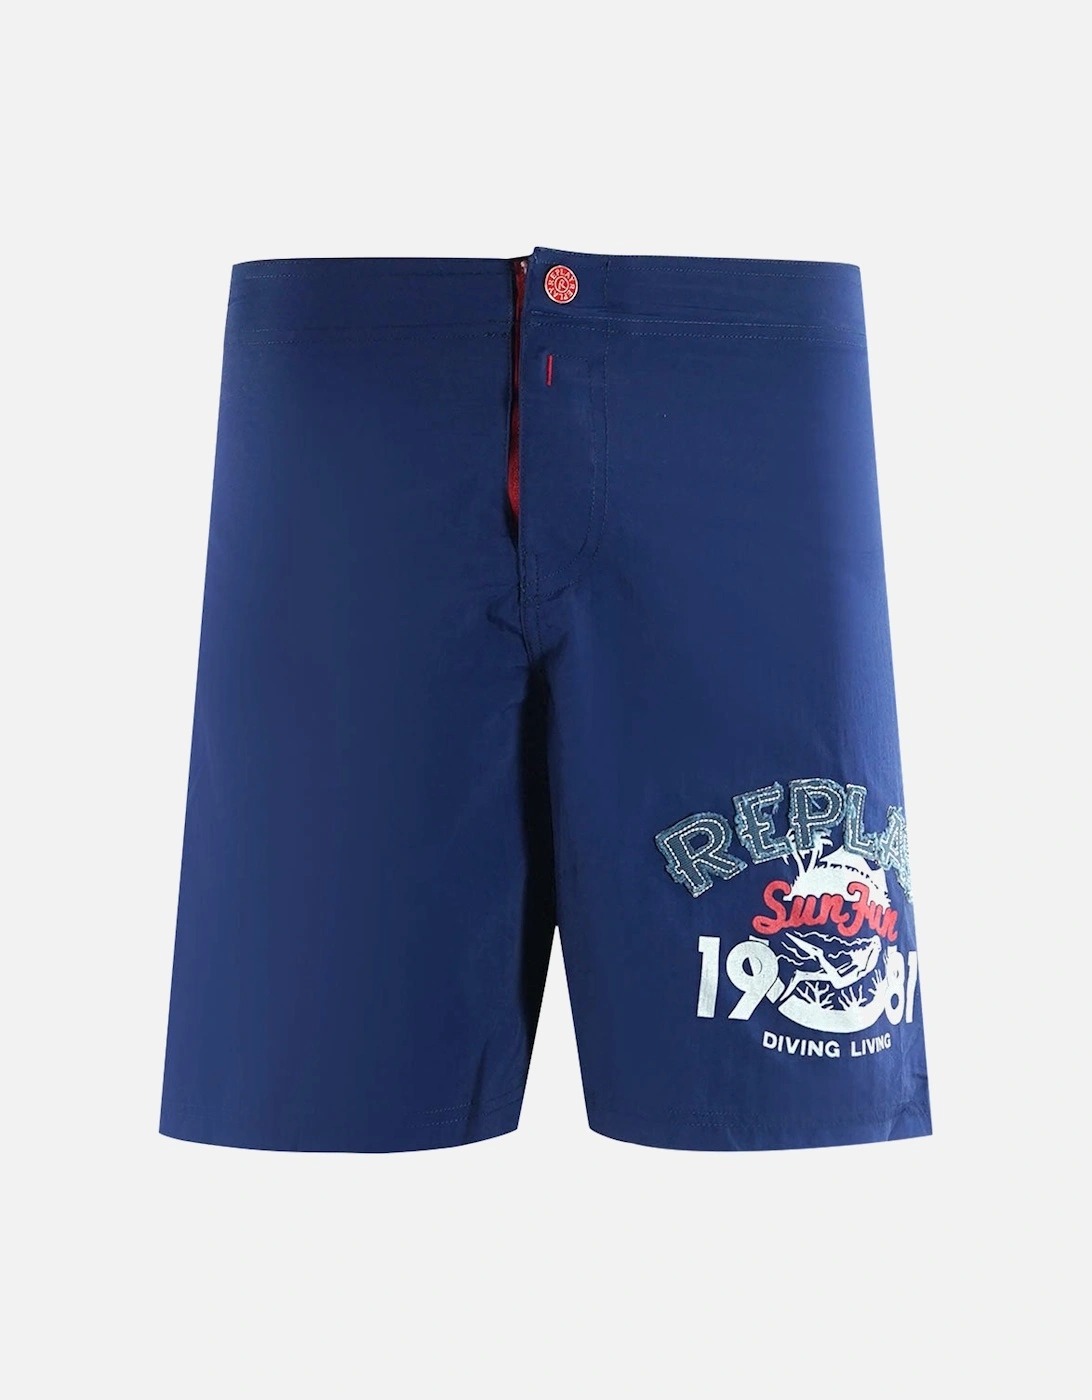 Ripar Navy Blue Swim Shorts, 3 of 2